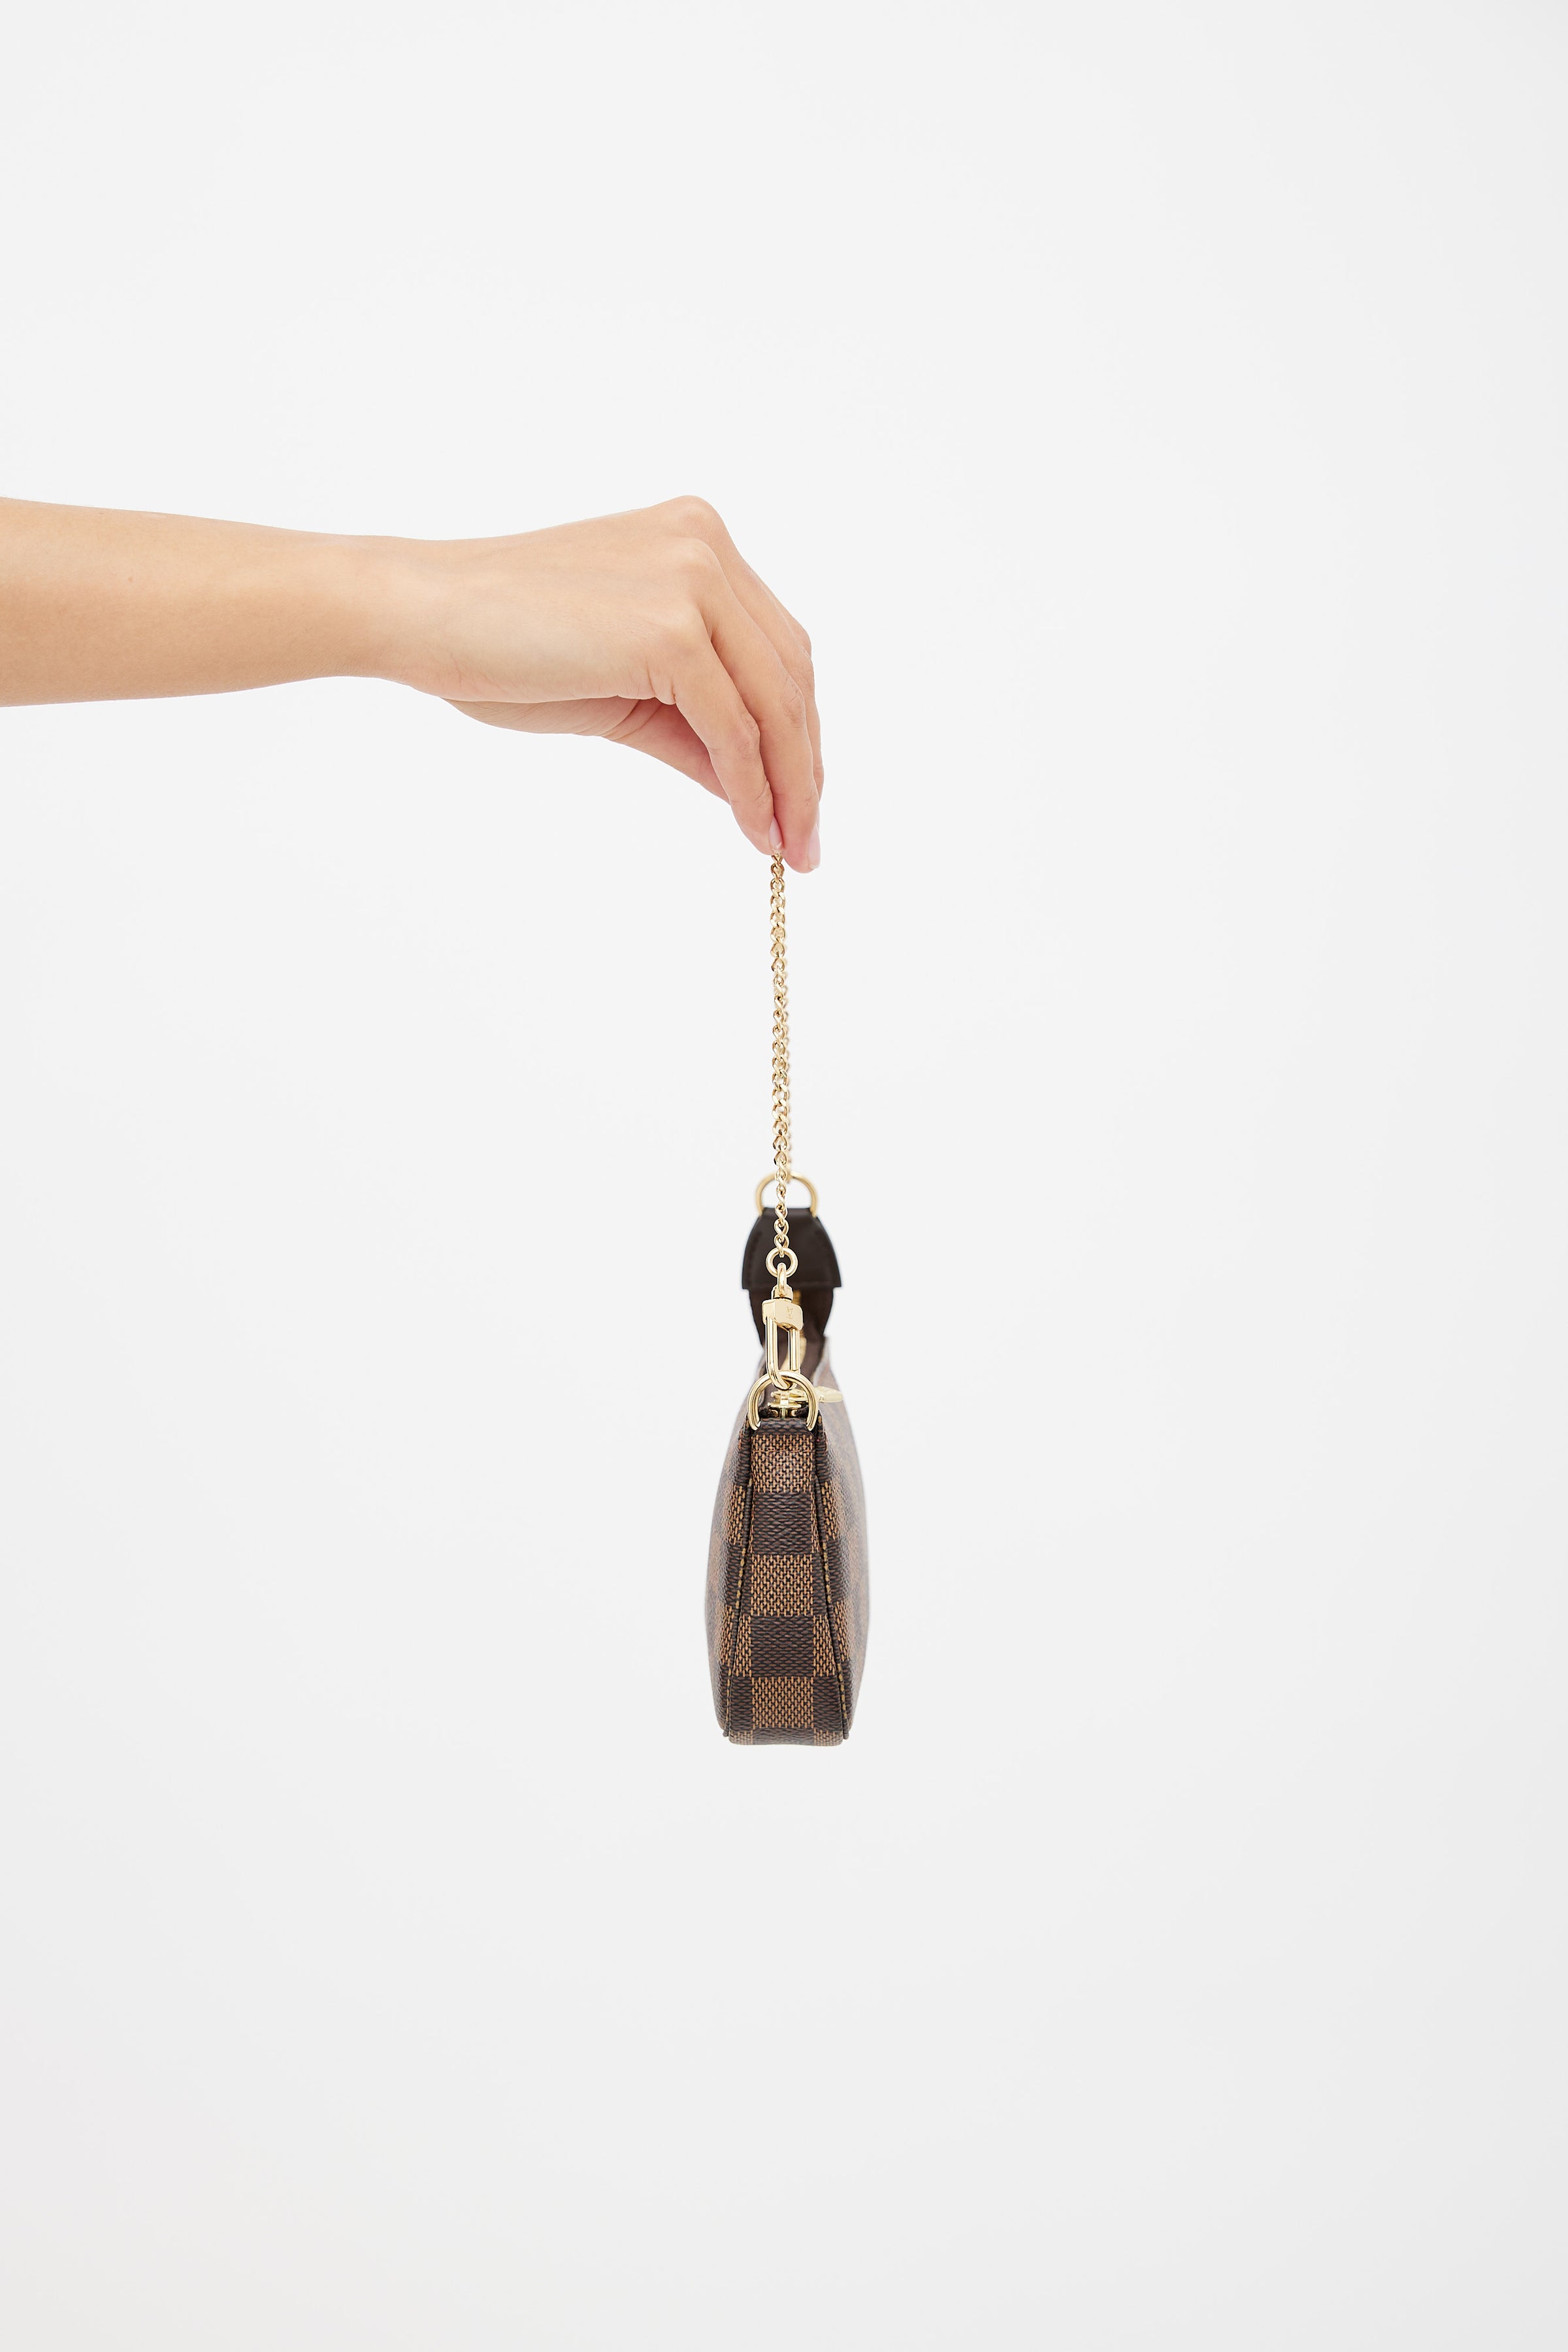 Louis Vuitton Mini Pochette Accessoires on Chain, Brown, One Size